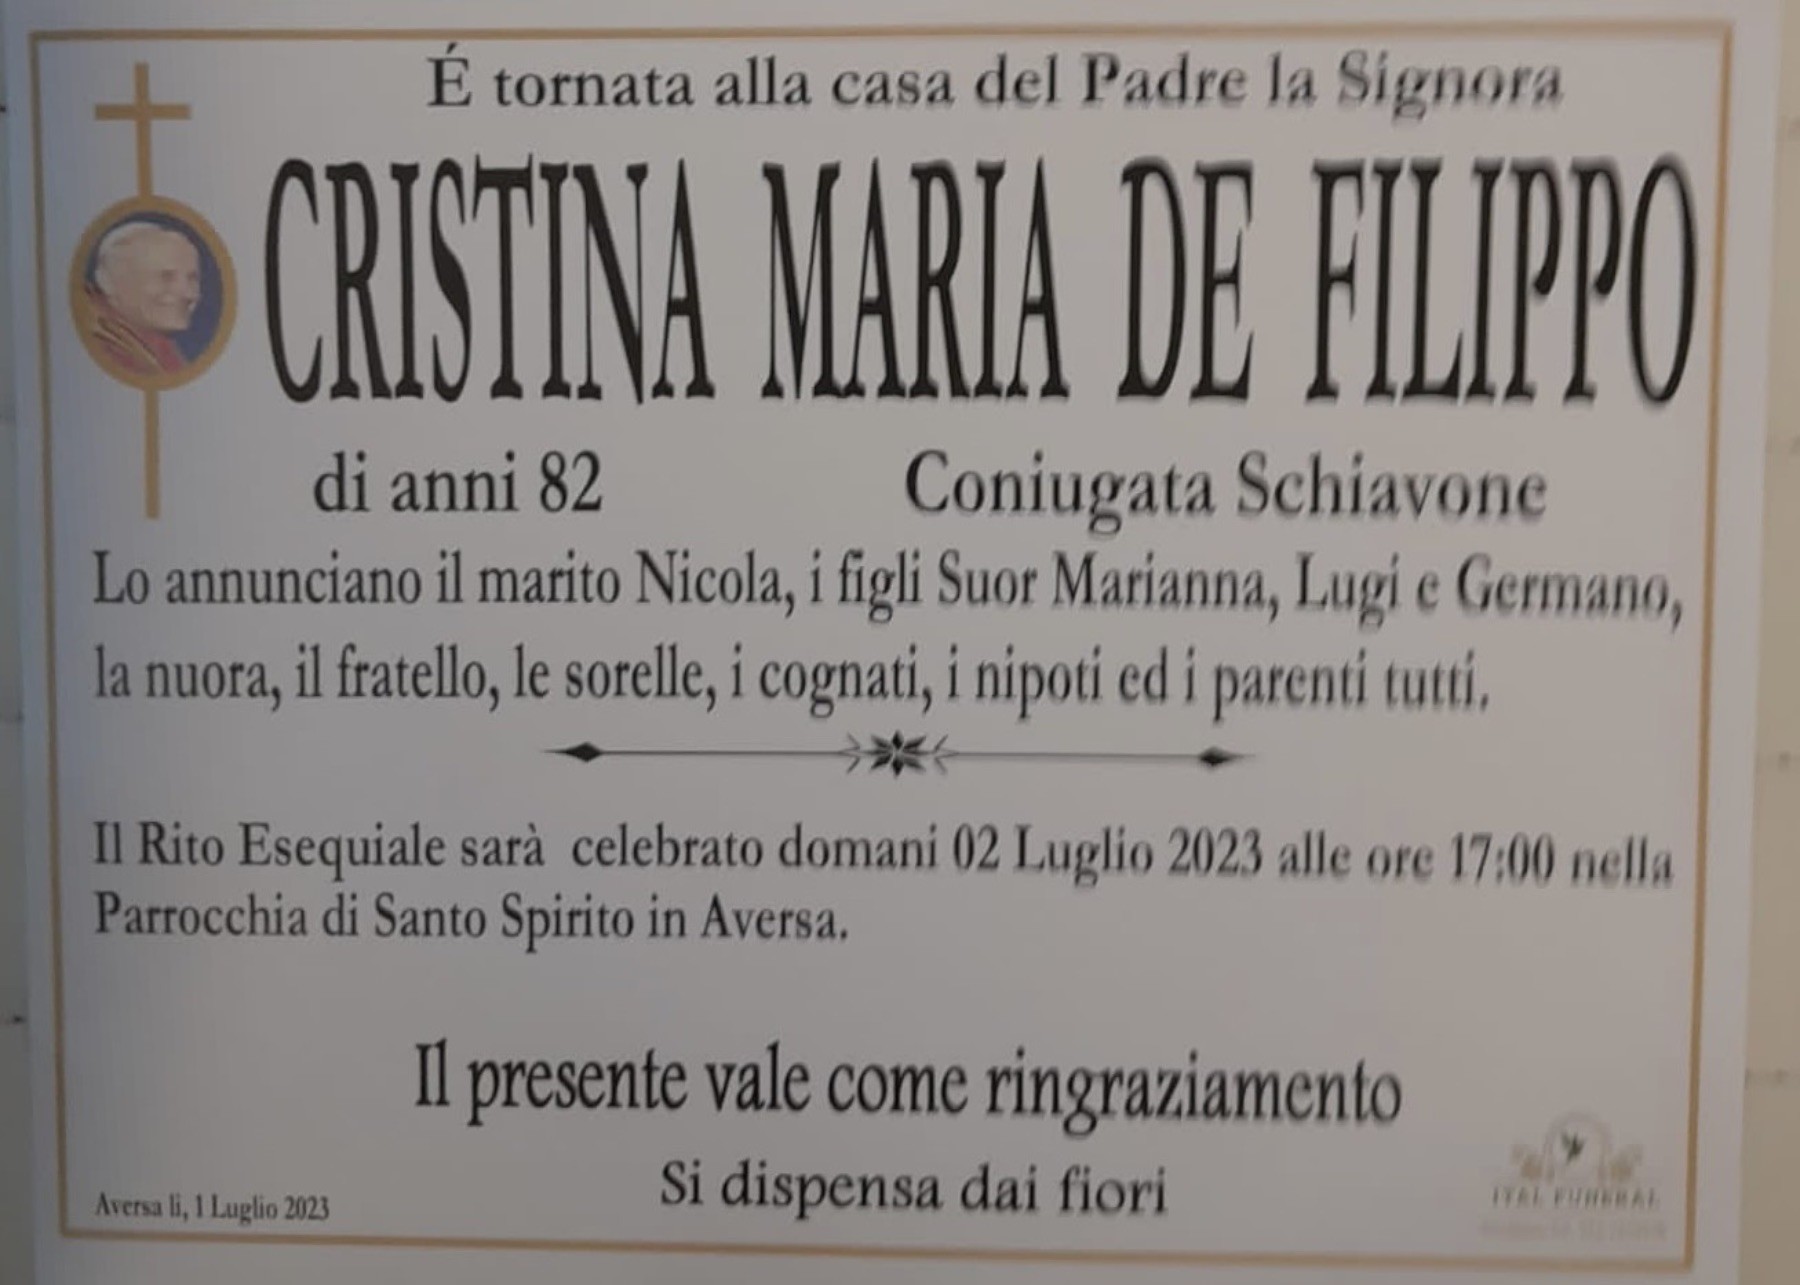 Cristina Maria De Filippo